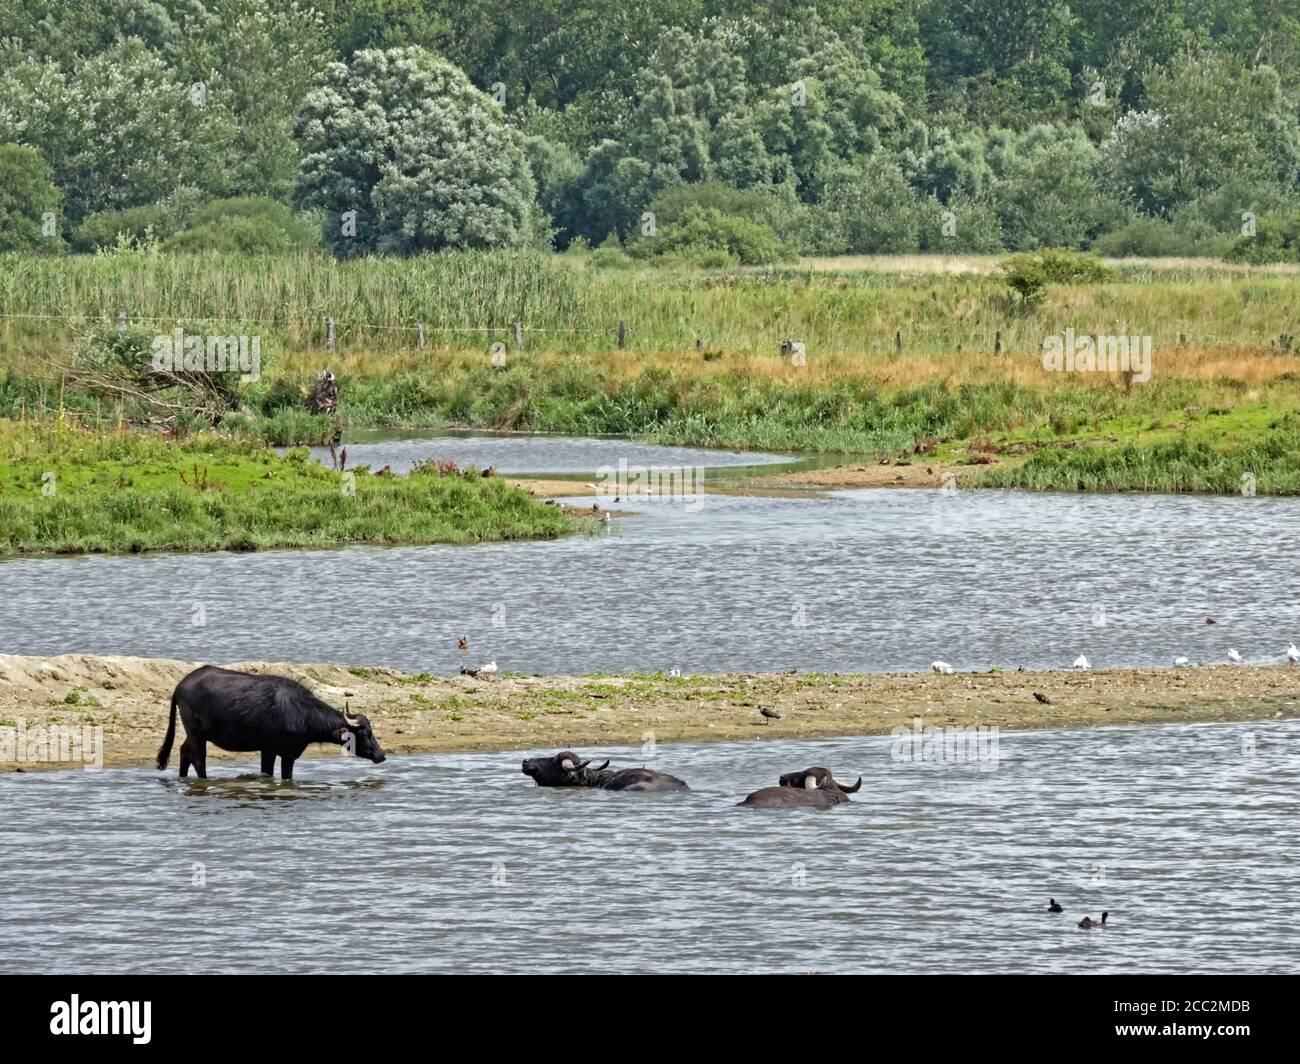 Water buffalos (Bubalus arnee) in Schleswig-Holstein, Germany, Europe Stock Photo